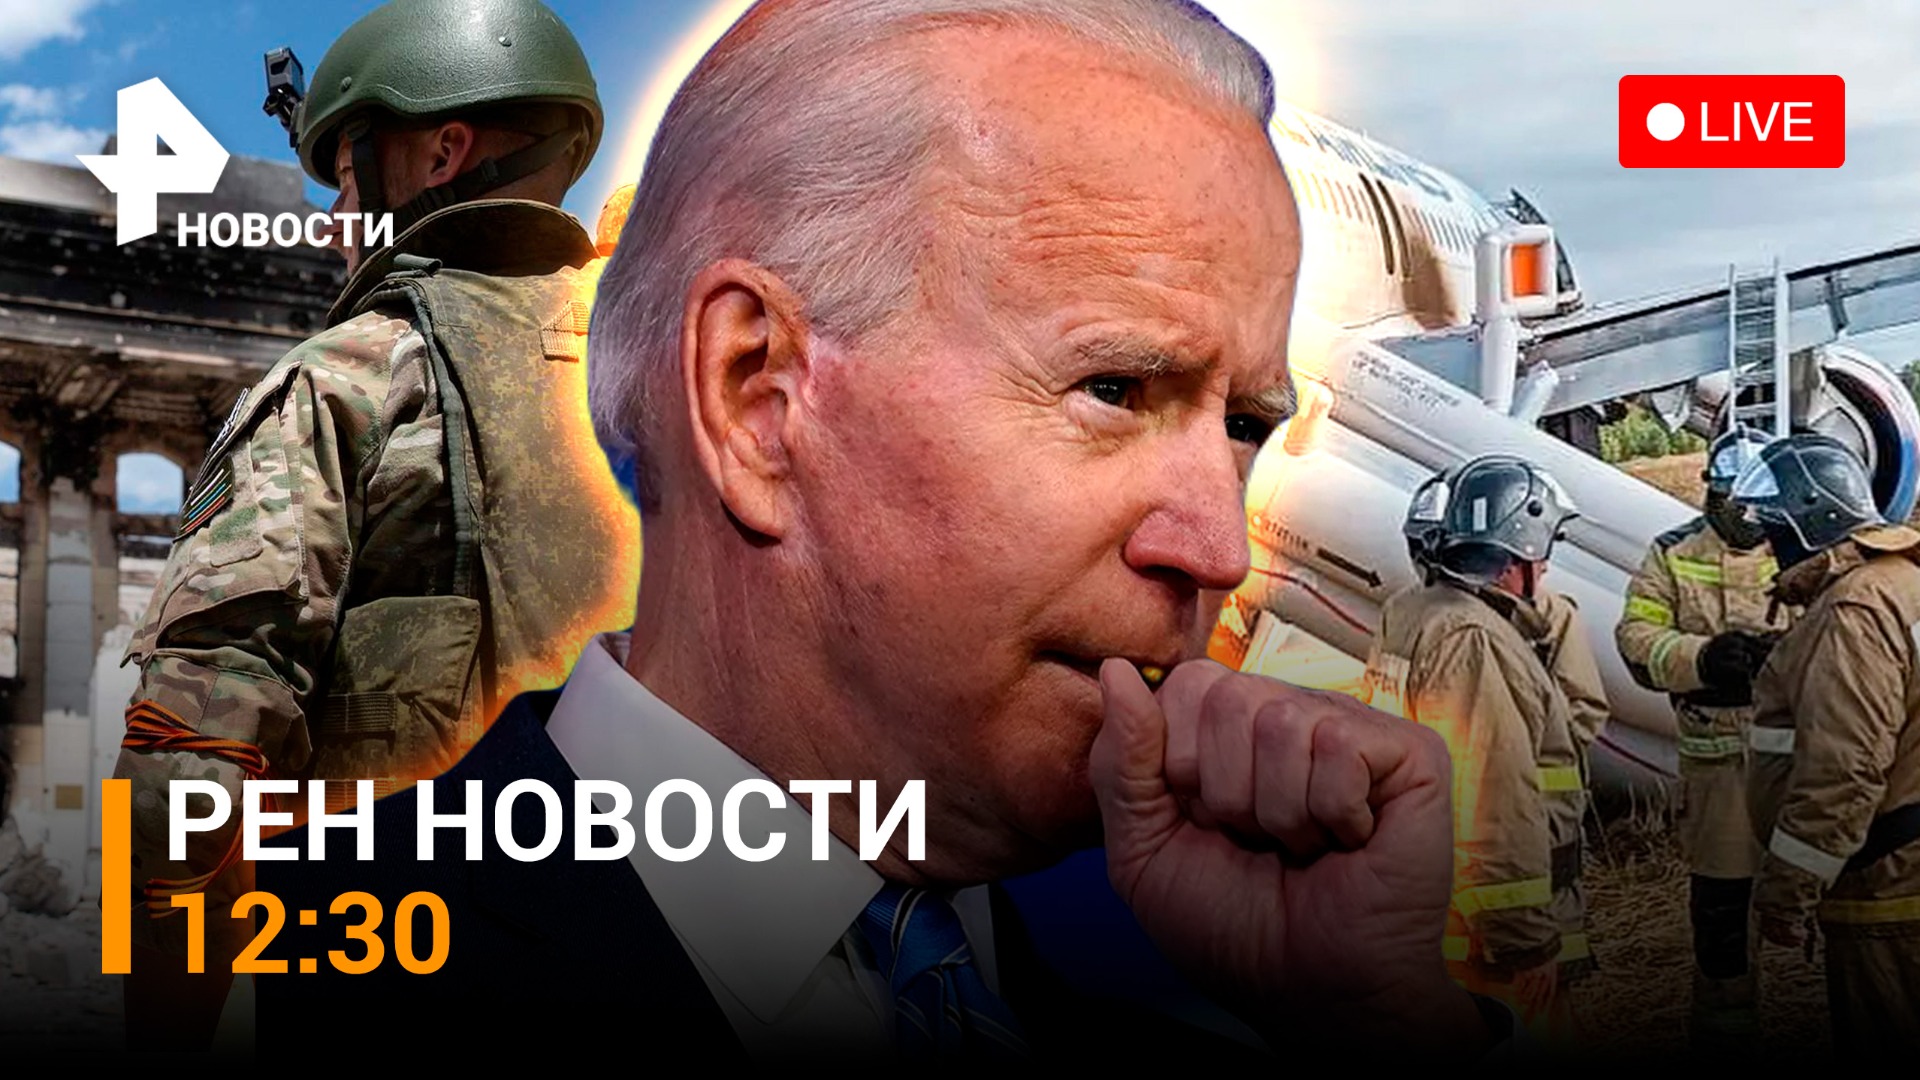 Самолет сел в поле под Новосибирском. Путин — о переговорах с Украиной / РЕН Новости 12.09, 12:30